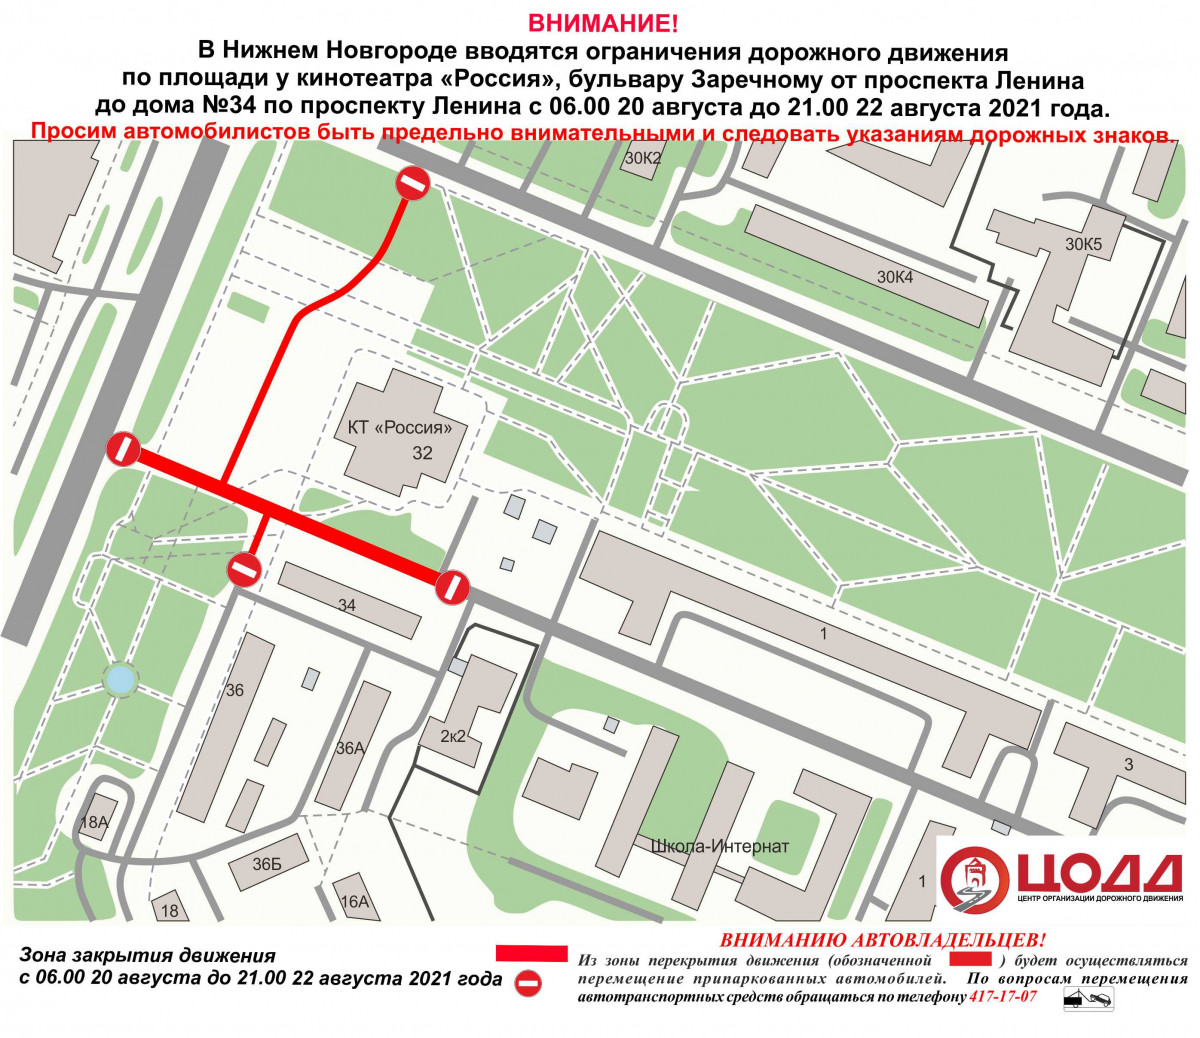 Движение на бульваре Заречном будет частично ограничено с 20 августа